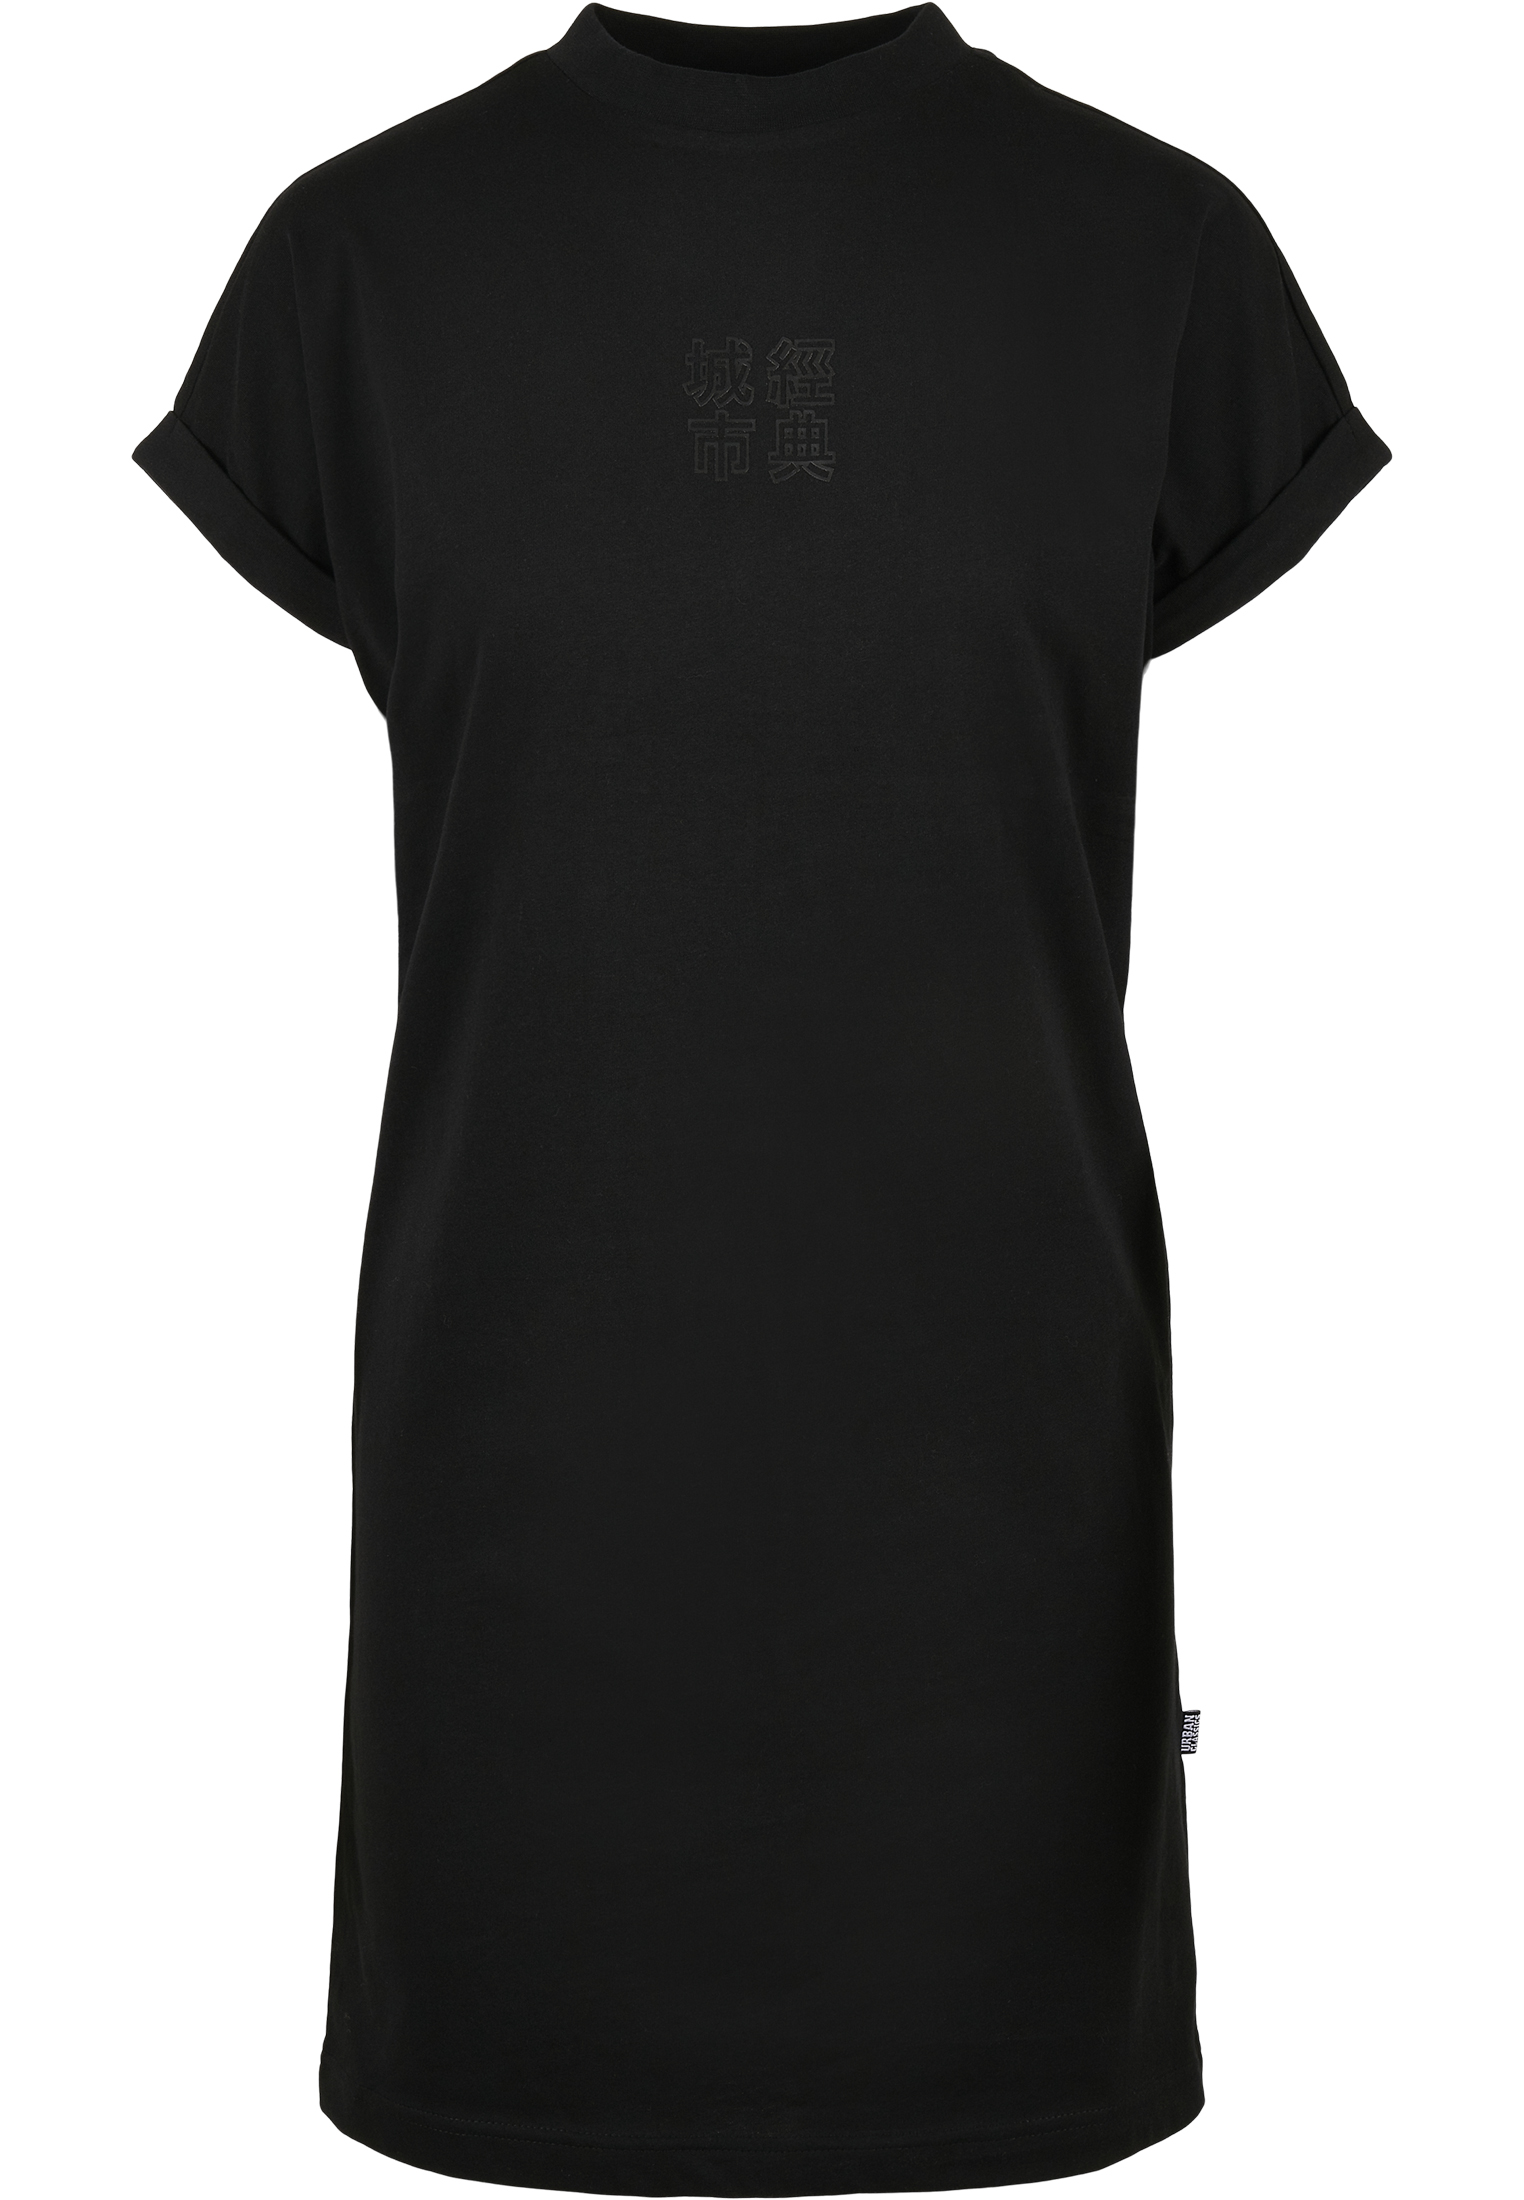 Kleider & R?cke Ladies Cut On Sleeve Printed Tee Dress in Farbe black/black